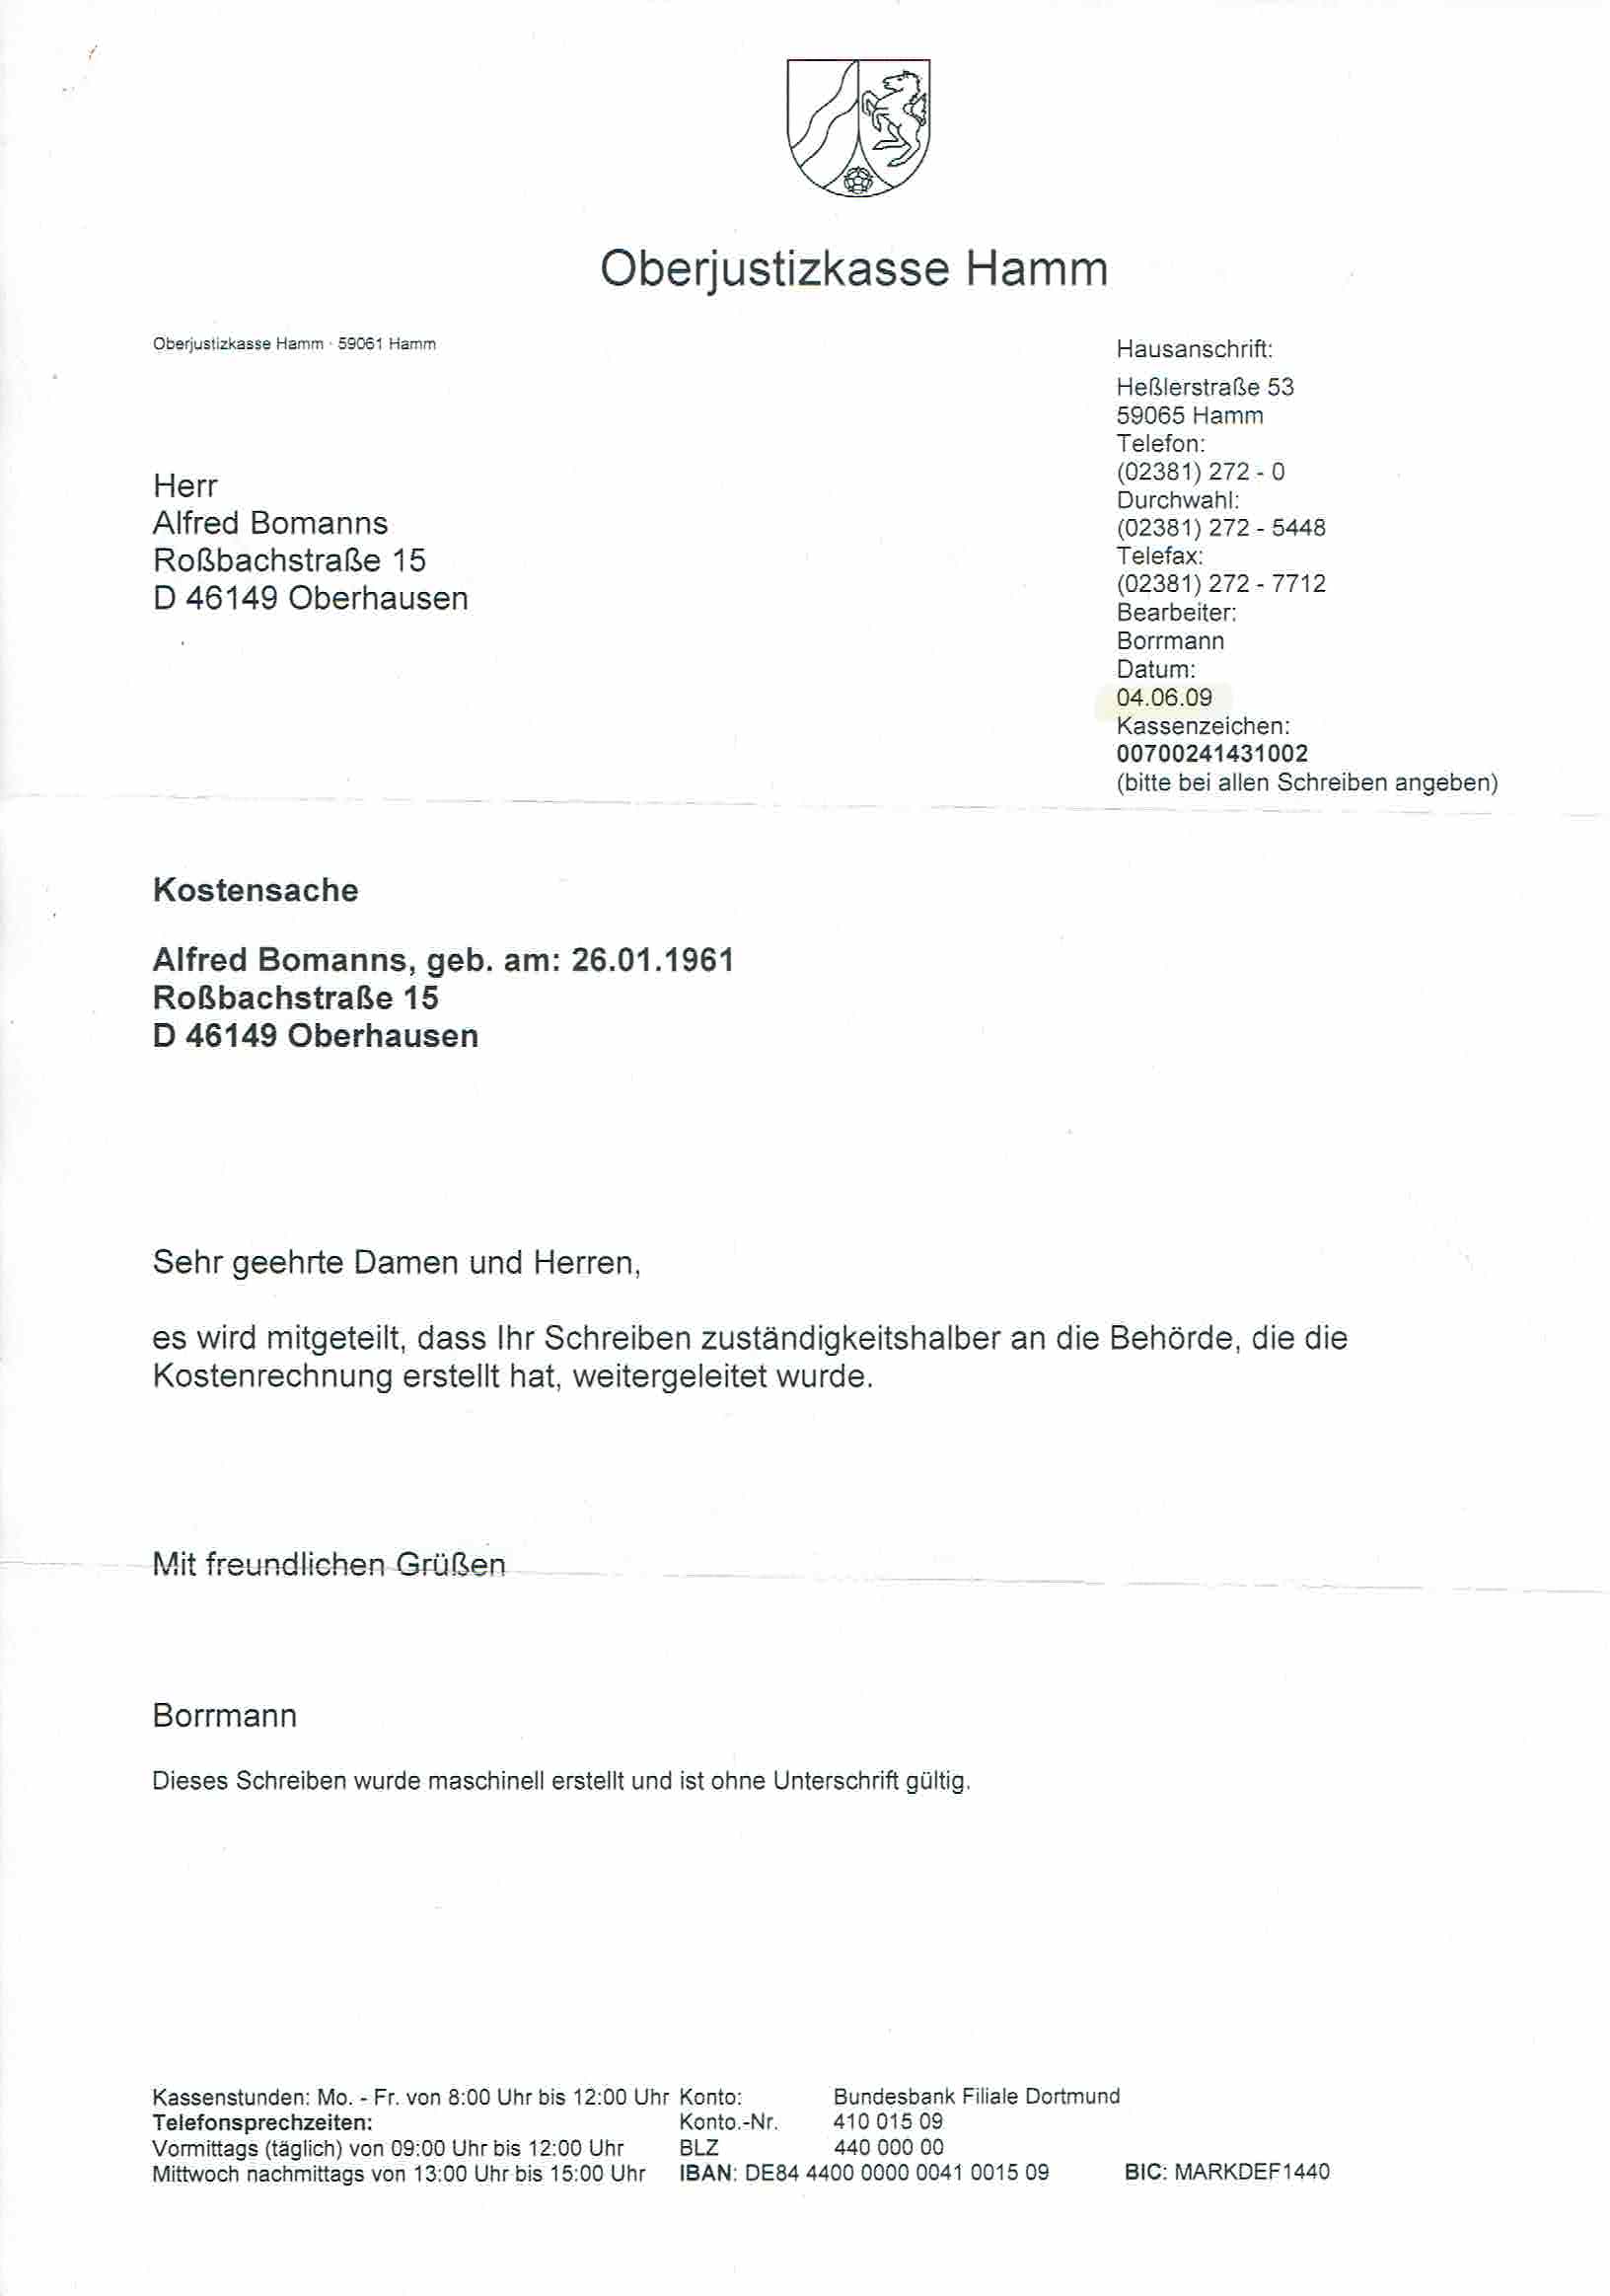 Rechnung der Oberjustizkasse Hamm über 50 € wegen Zurückweisung/Verwerfung der Beschwerde